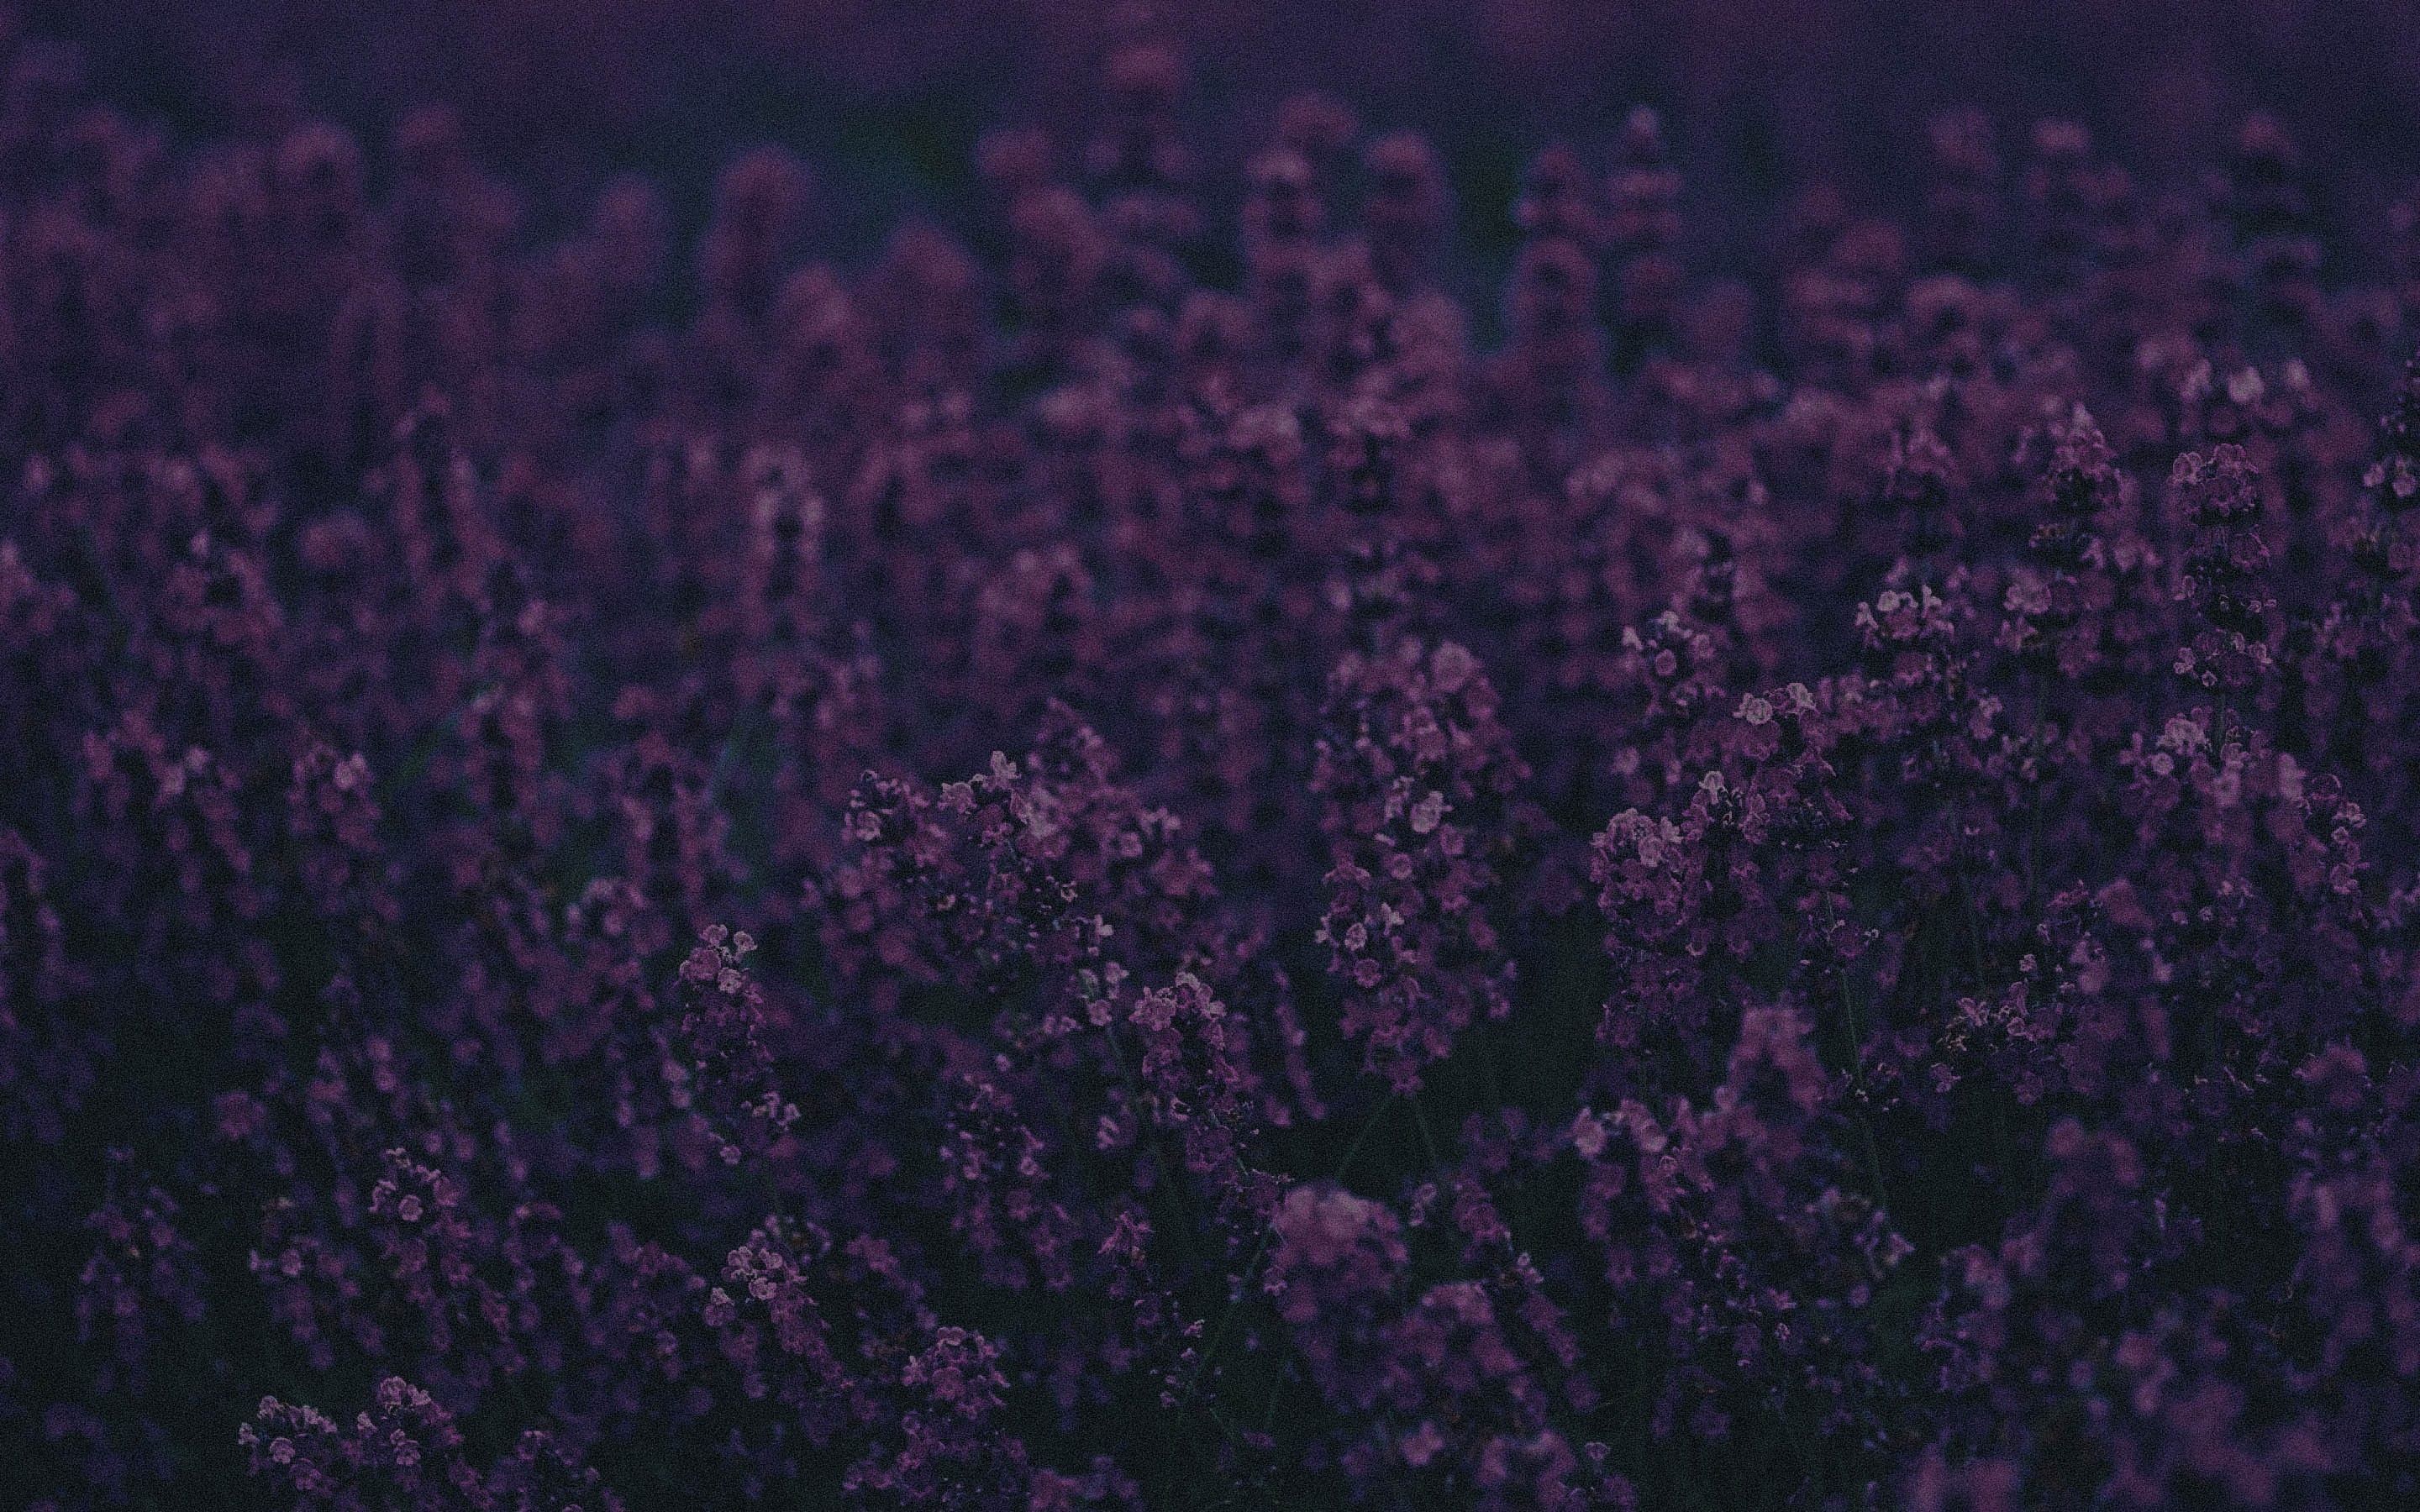 A field of purple flowers. - Lavender